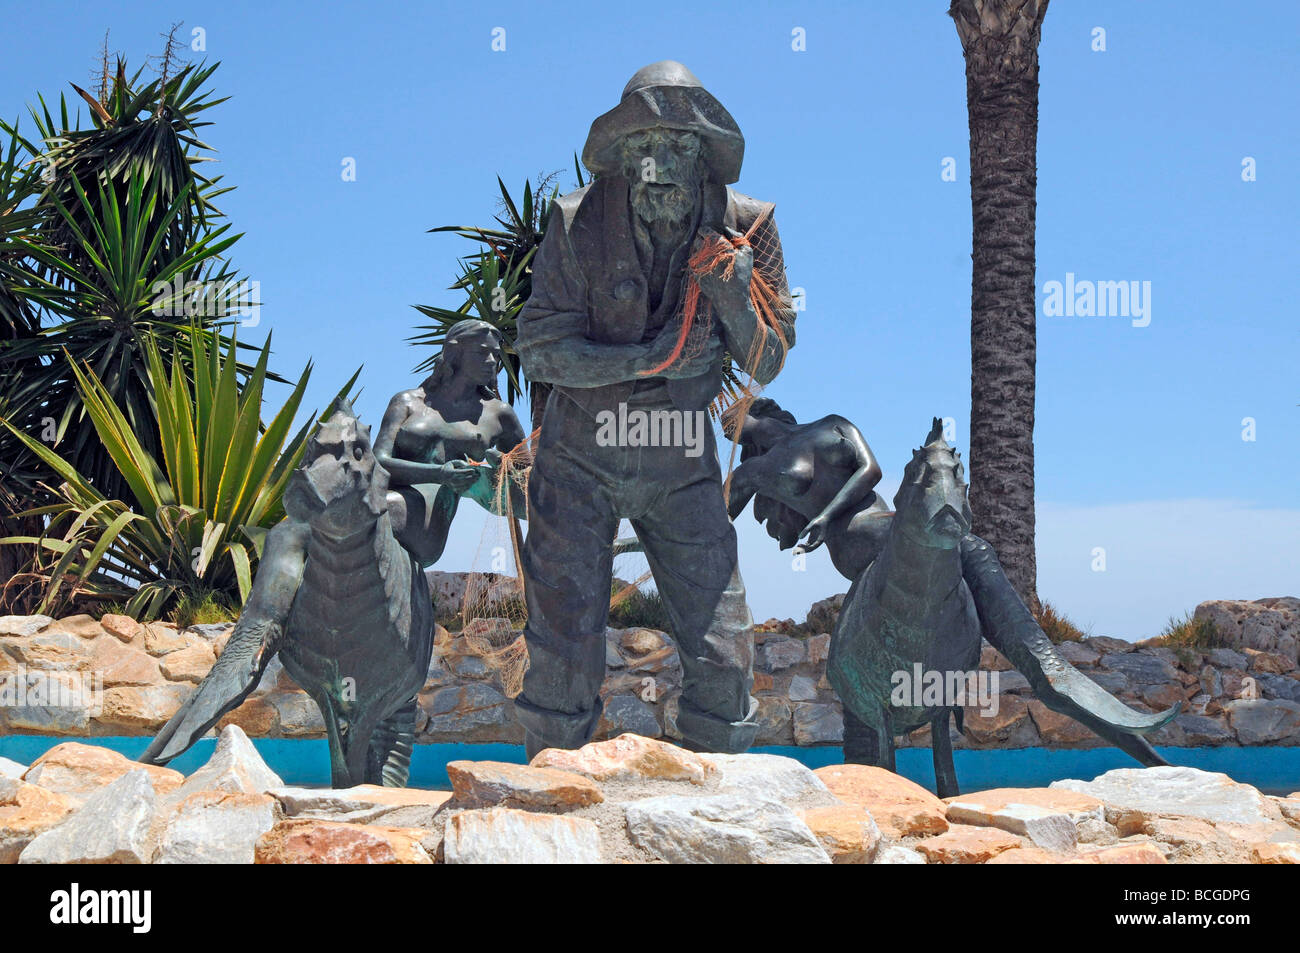 Estatua del pescador y sirenas en la playa en Los Alcázares, Mar Menor, Murcia, Costa Calida, al sur este de España Foto de stock